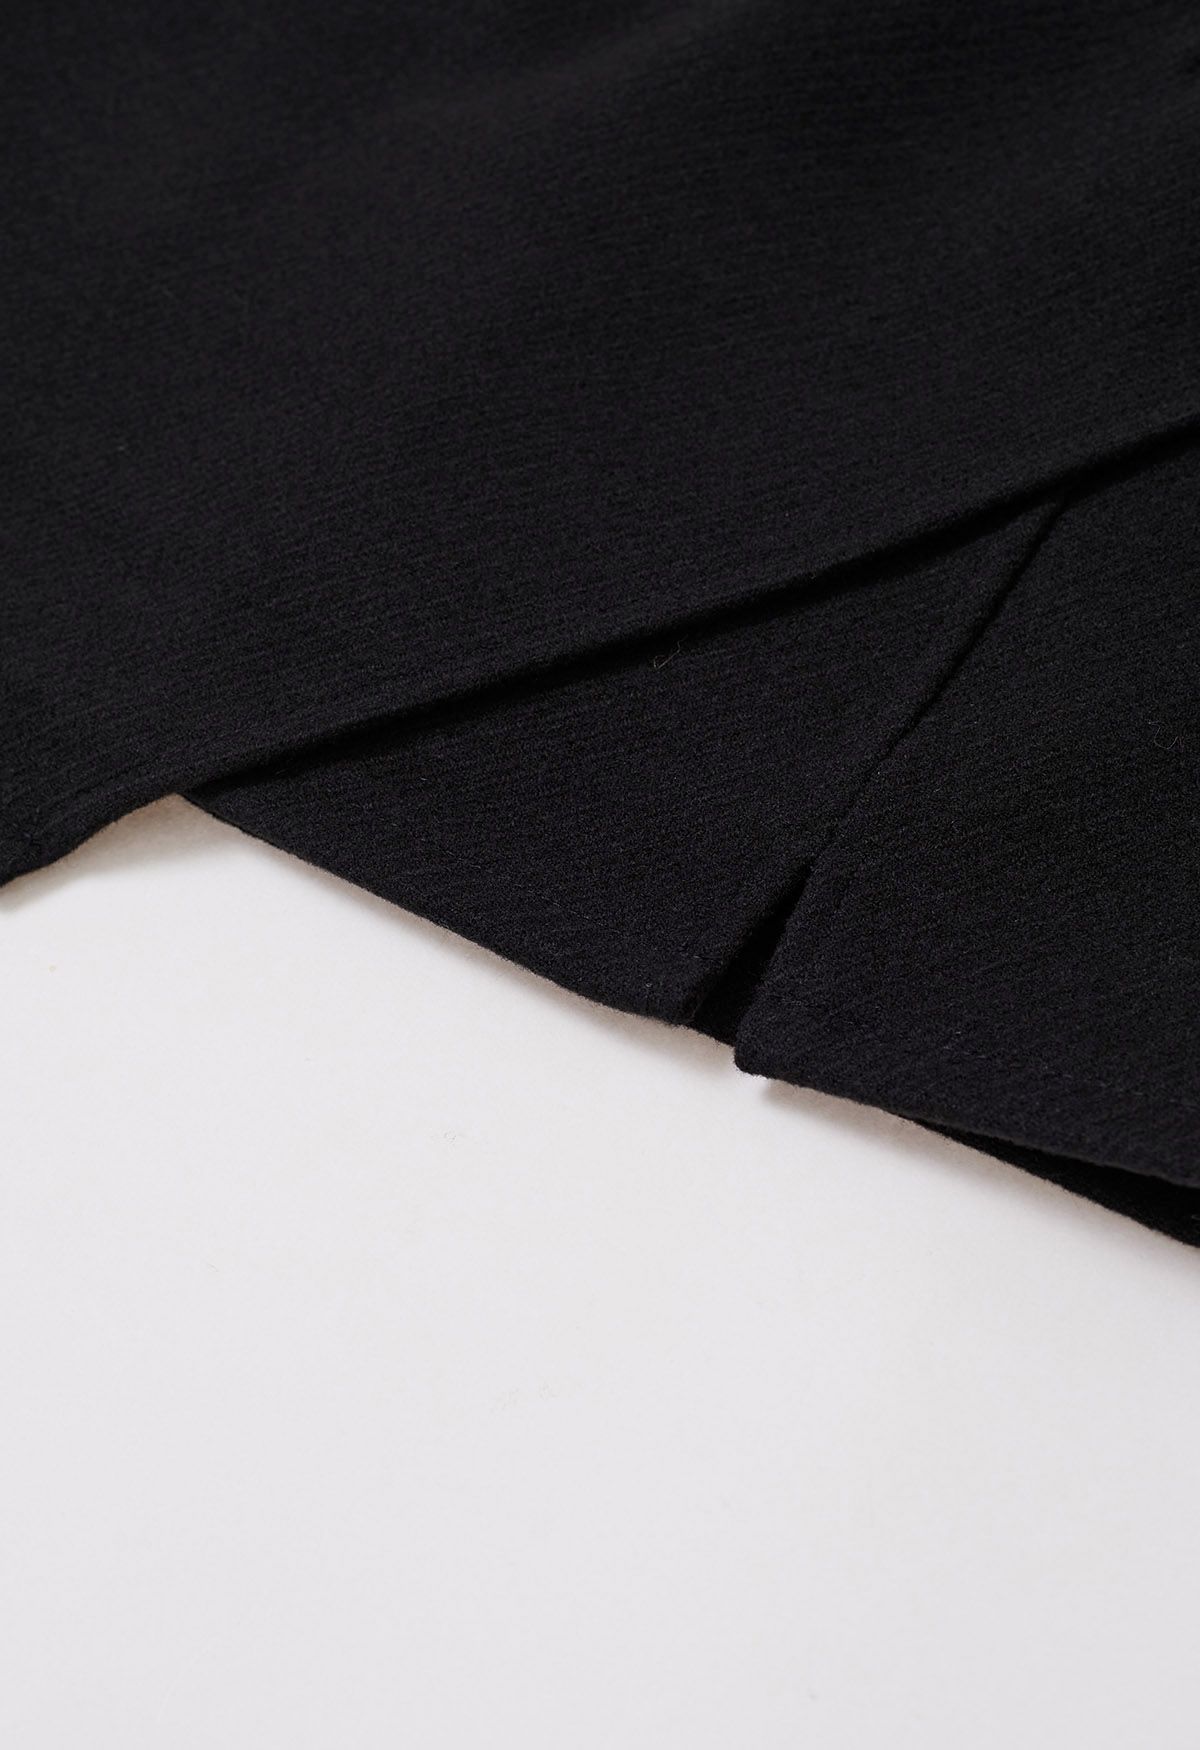 تنورة قصيرة من مزيج الصوف مع حافة مدببة باللون الأسود